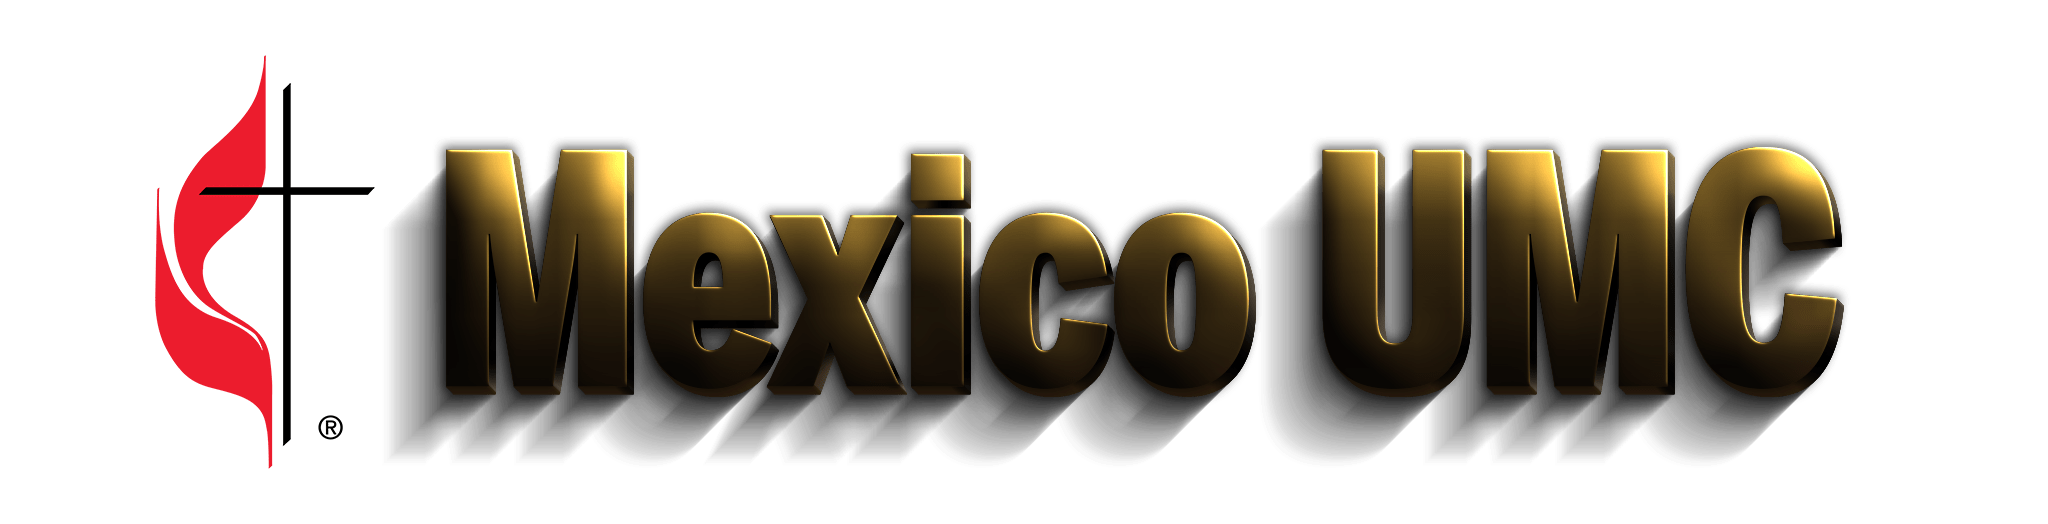 Mexico UMC